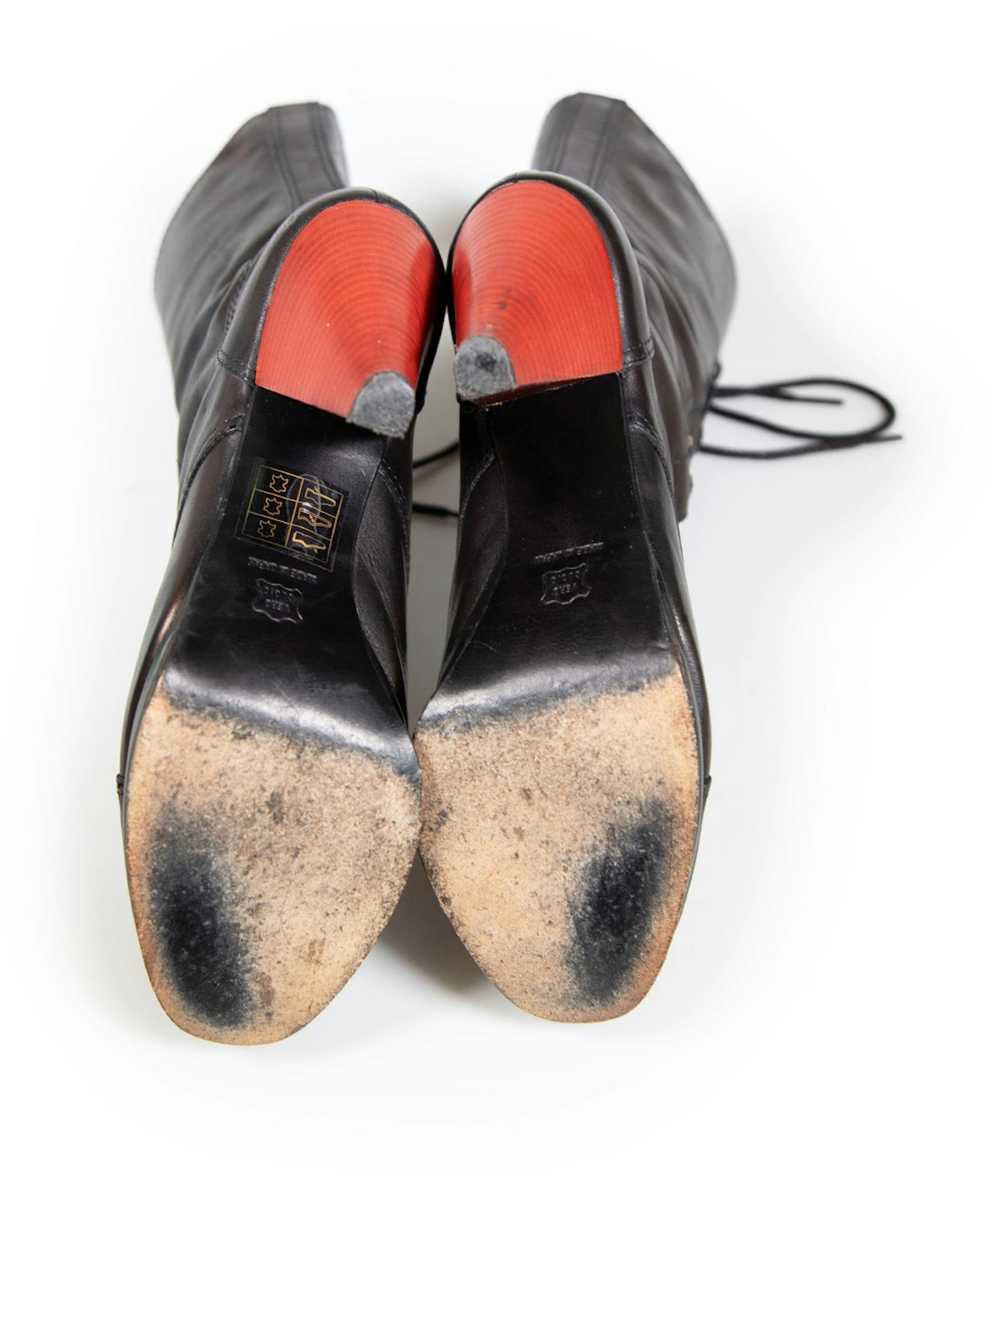 Yohji Yamamoto Black Leather Laced Platform Boots - image 4